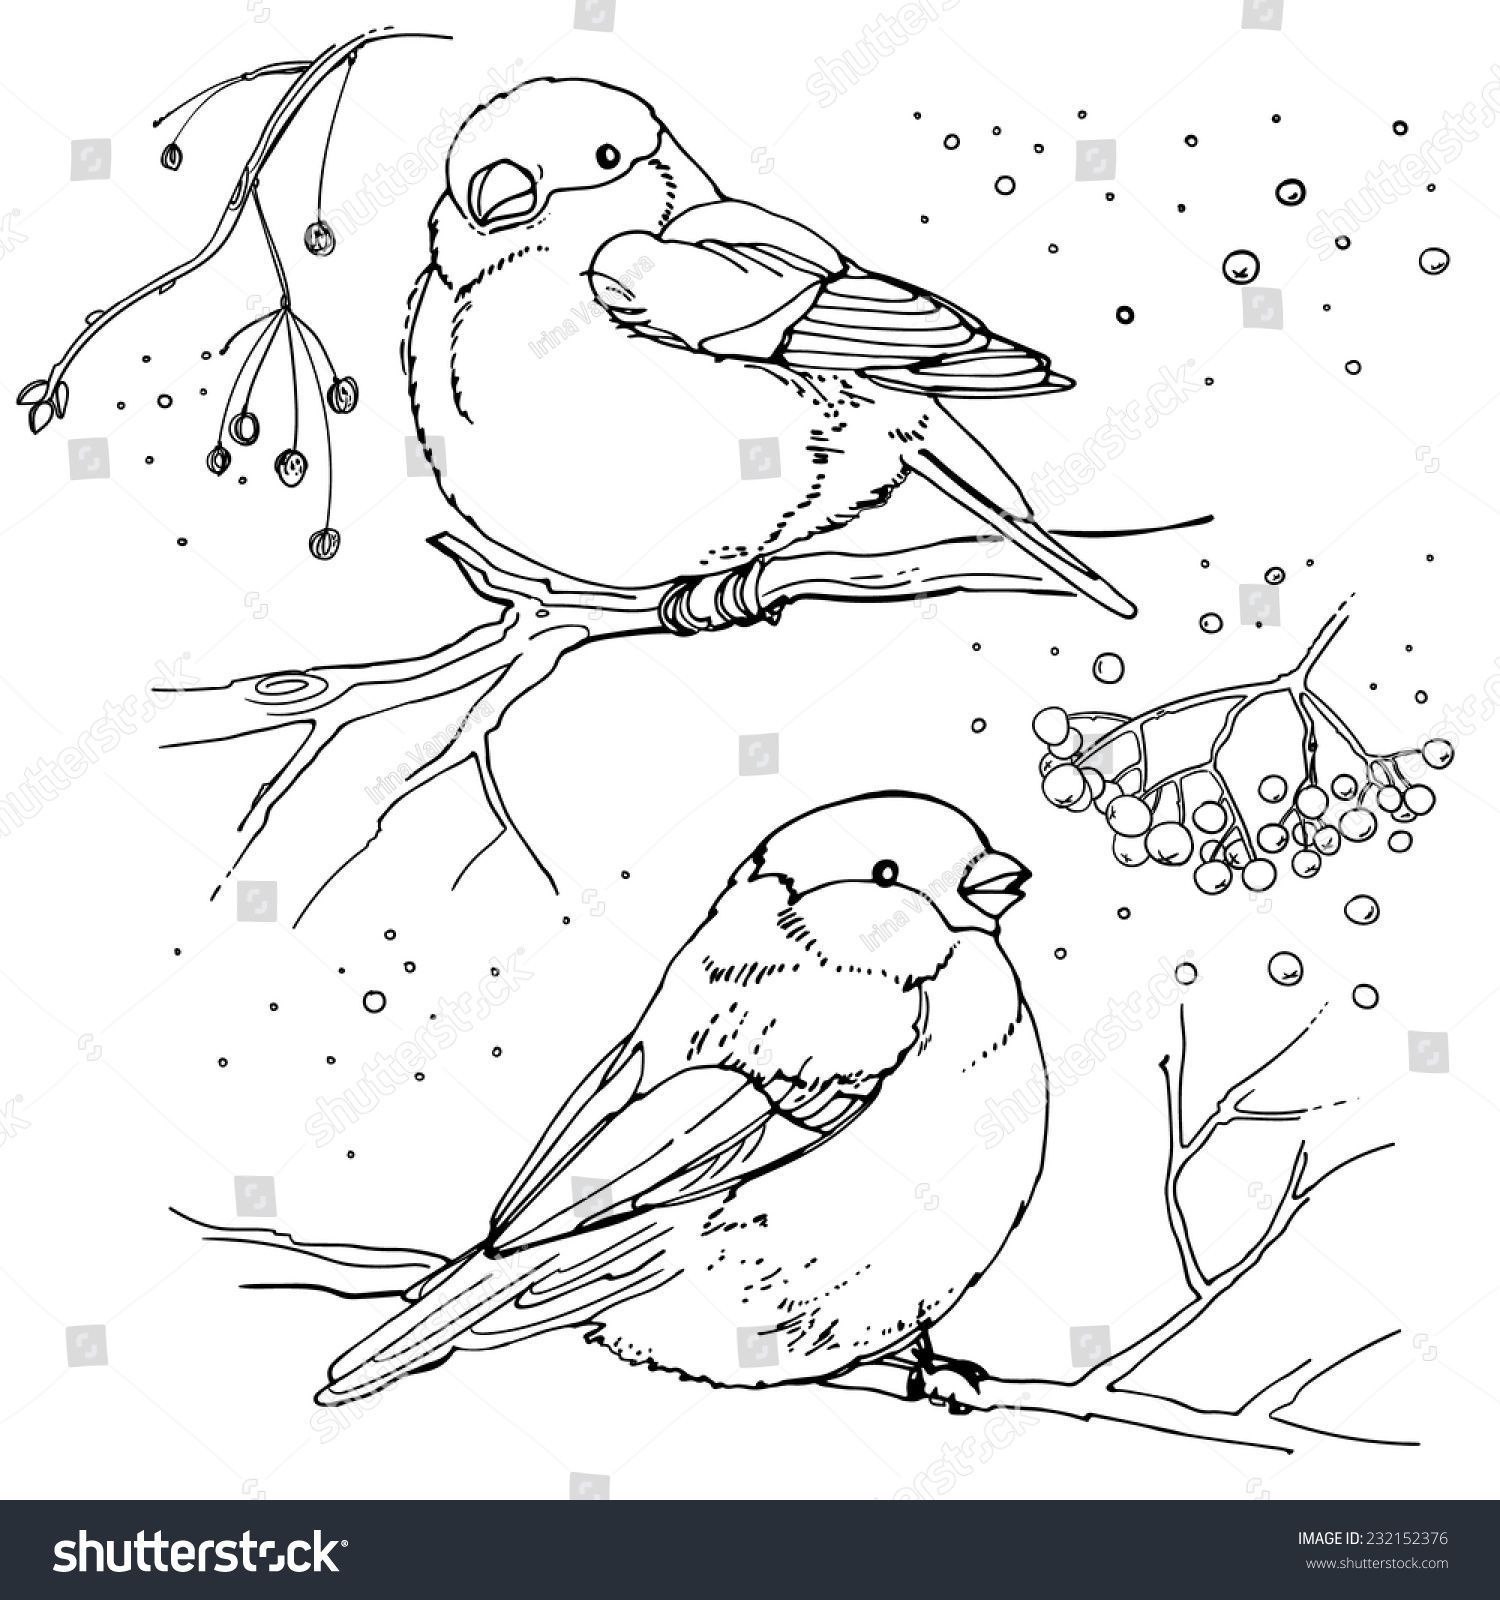 Раскраска птицы зимующие и перелетные